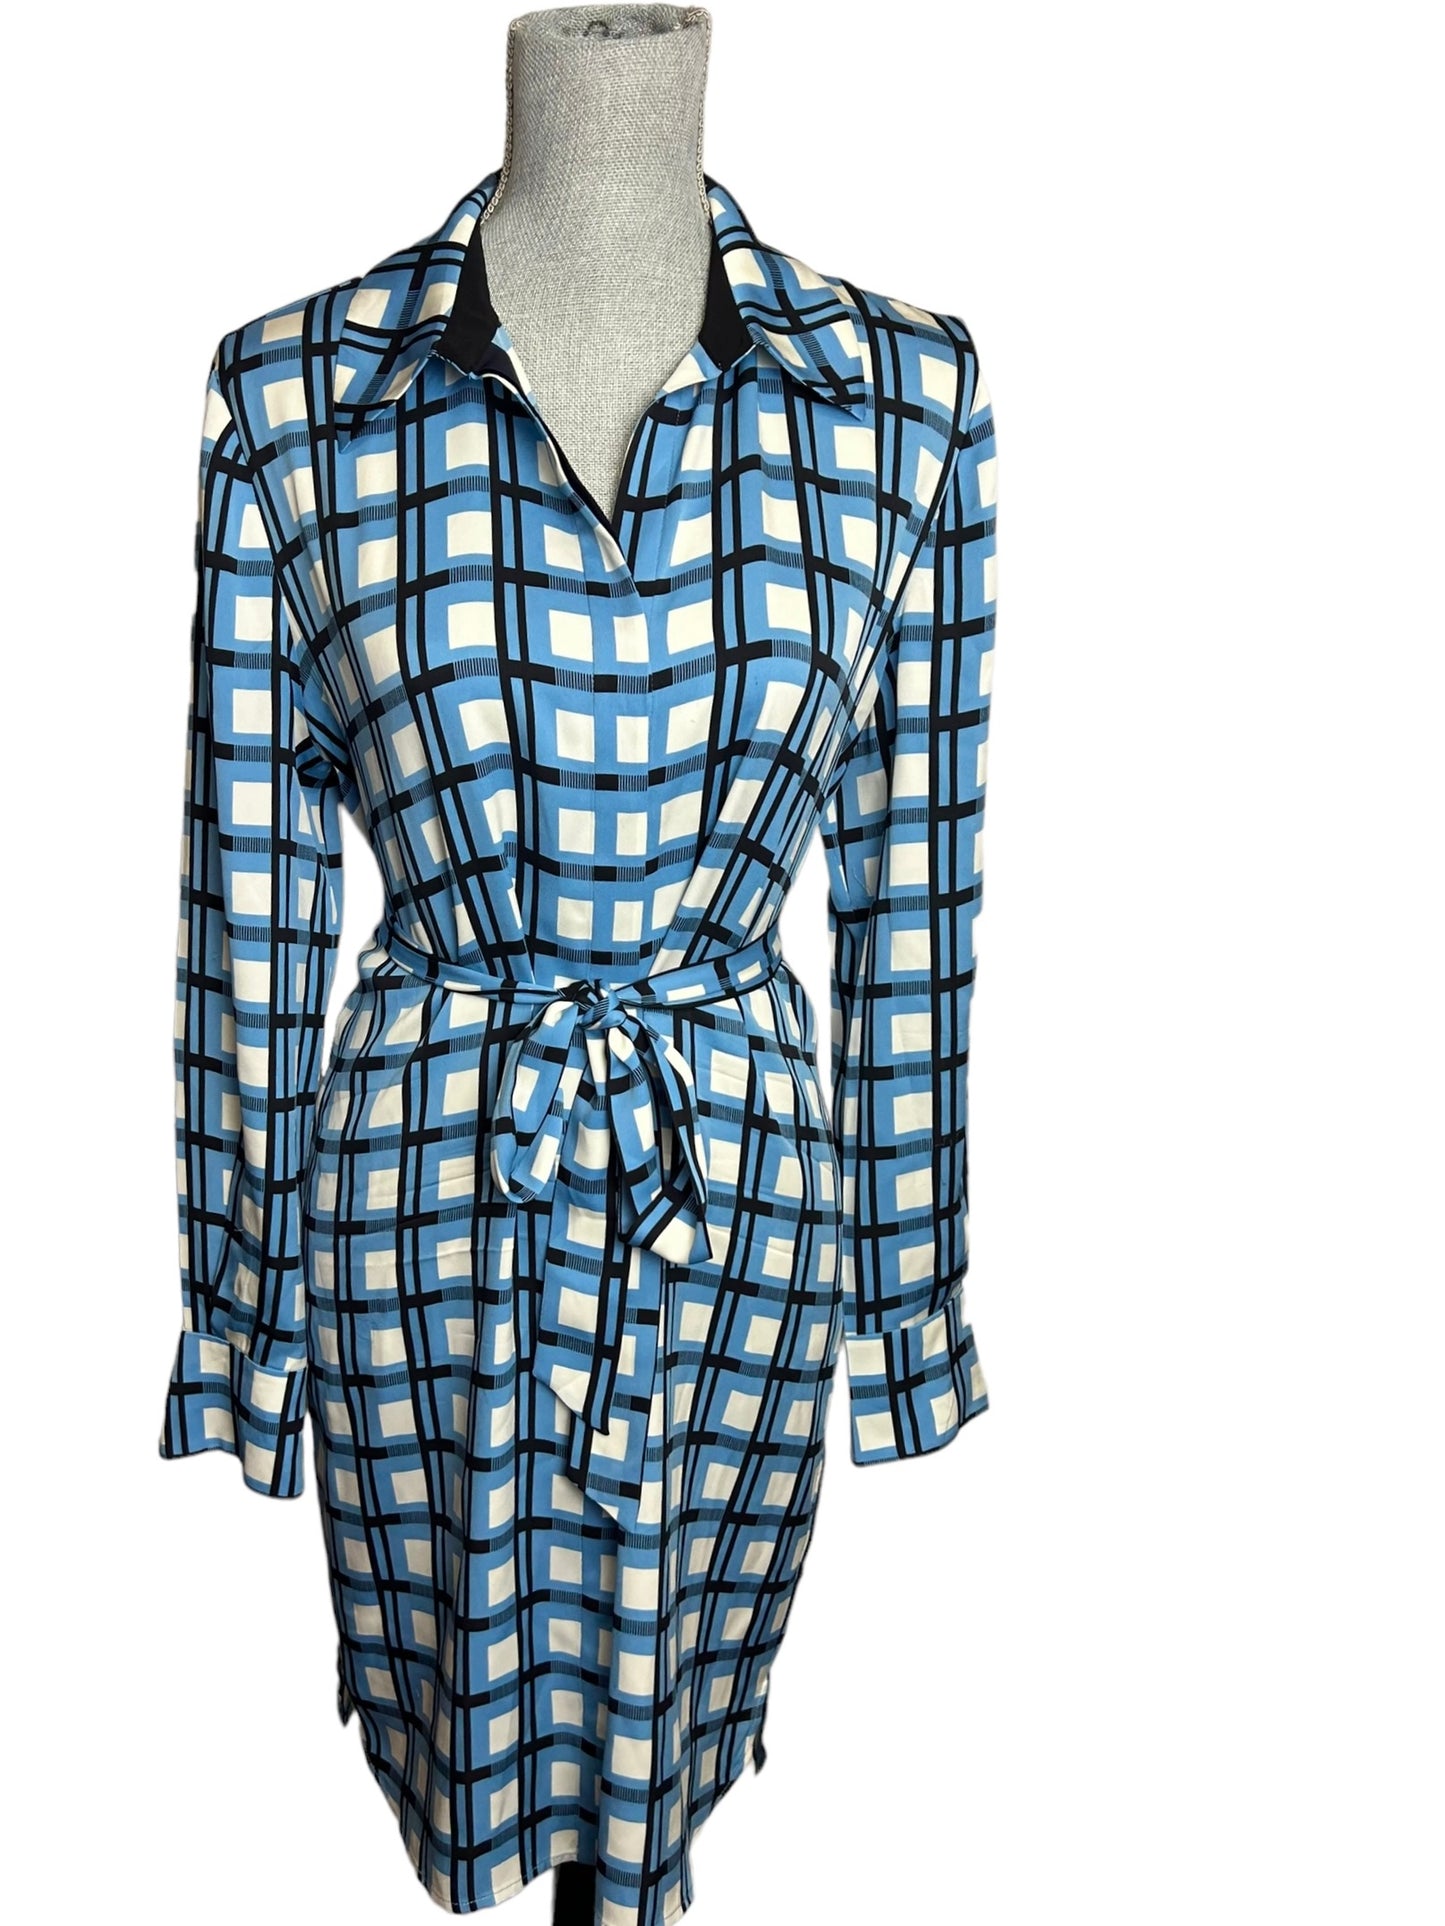 Diane Von Furstenberg Women's Slip Dress with Tie Blue Square Patterned - Size 6